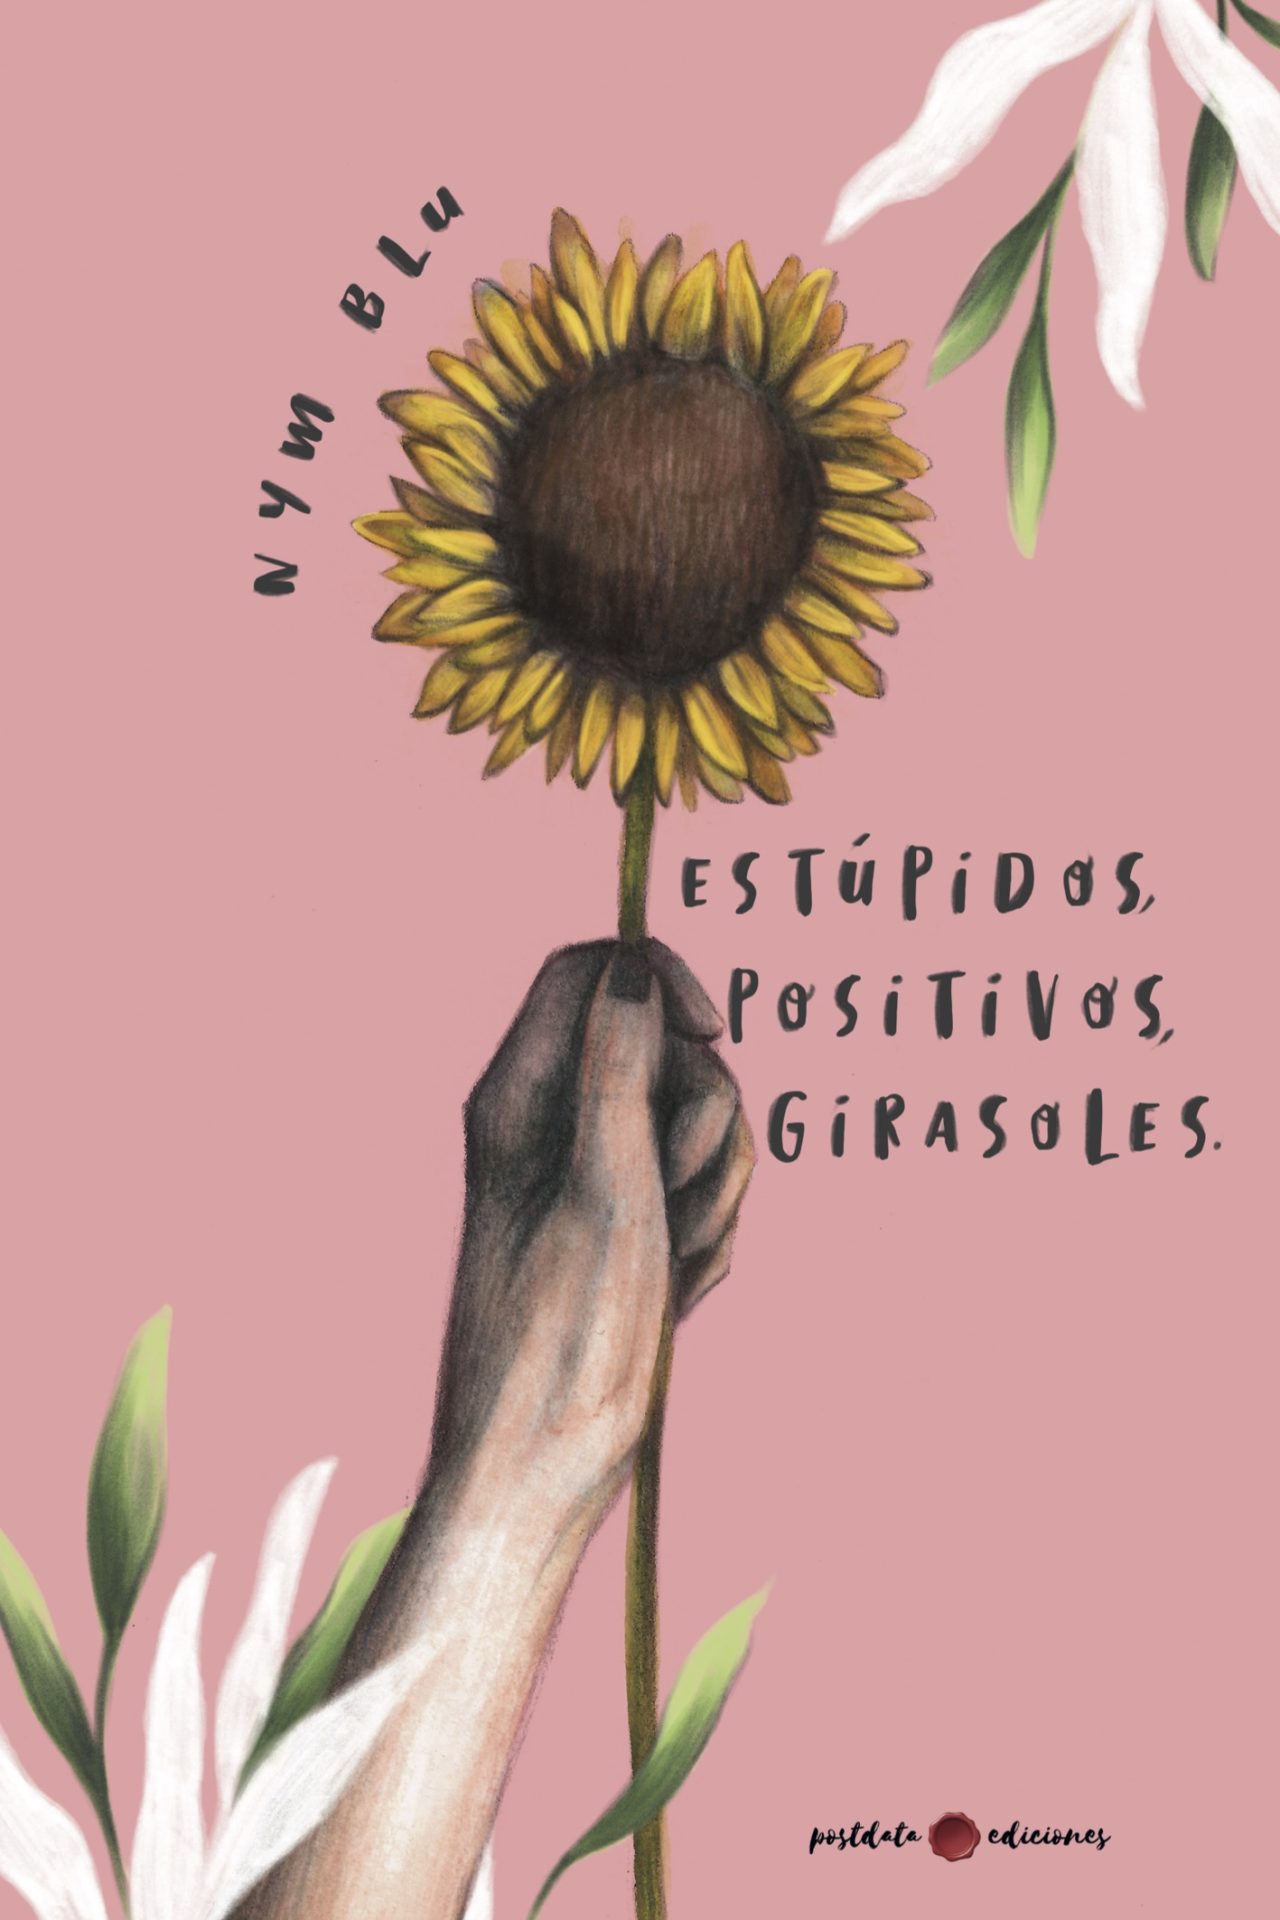 Estúpidos, positivos, girasoles - Postdata Ediciones